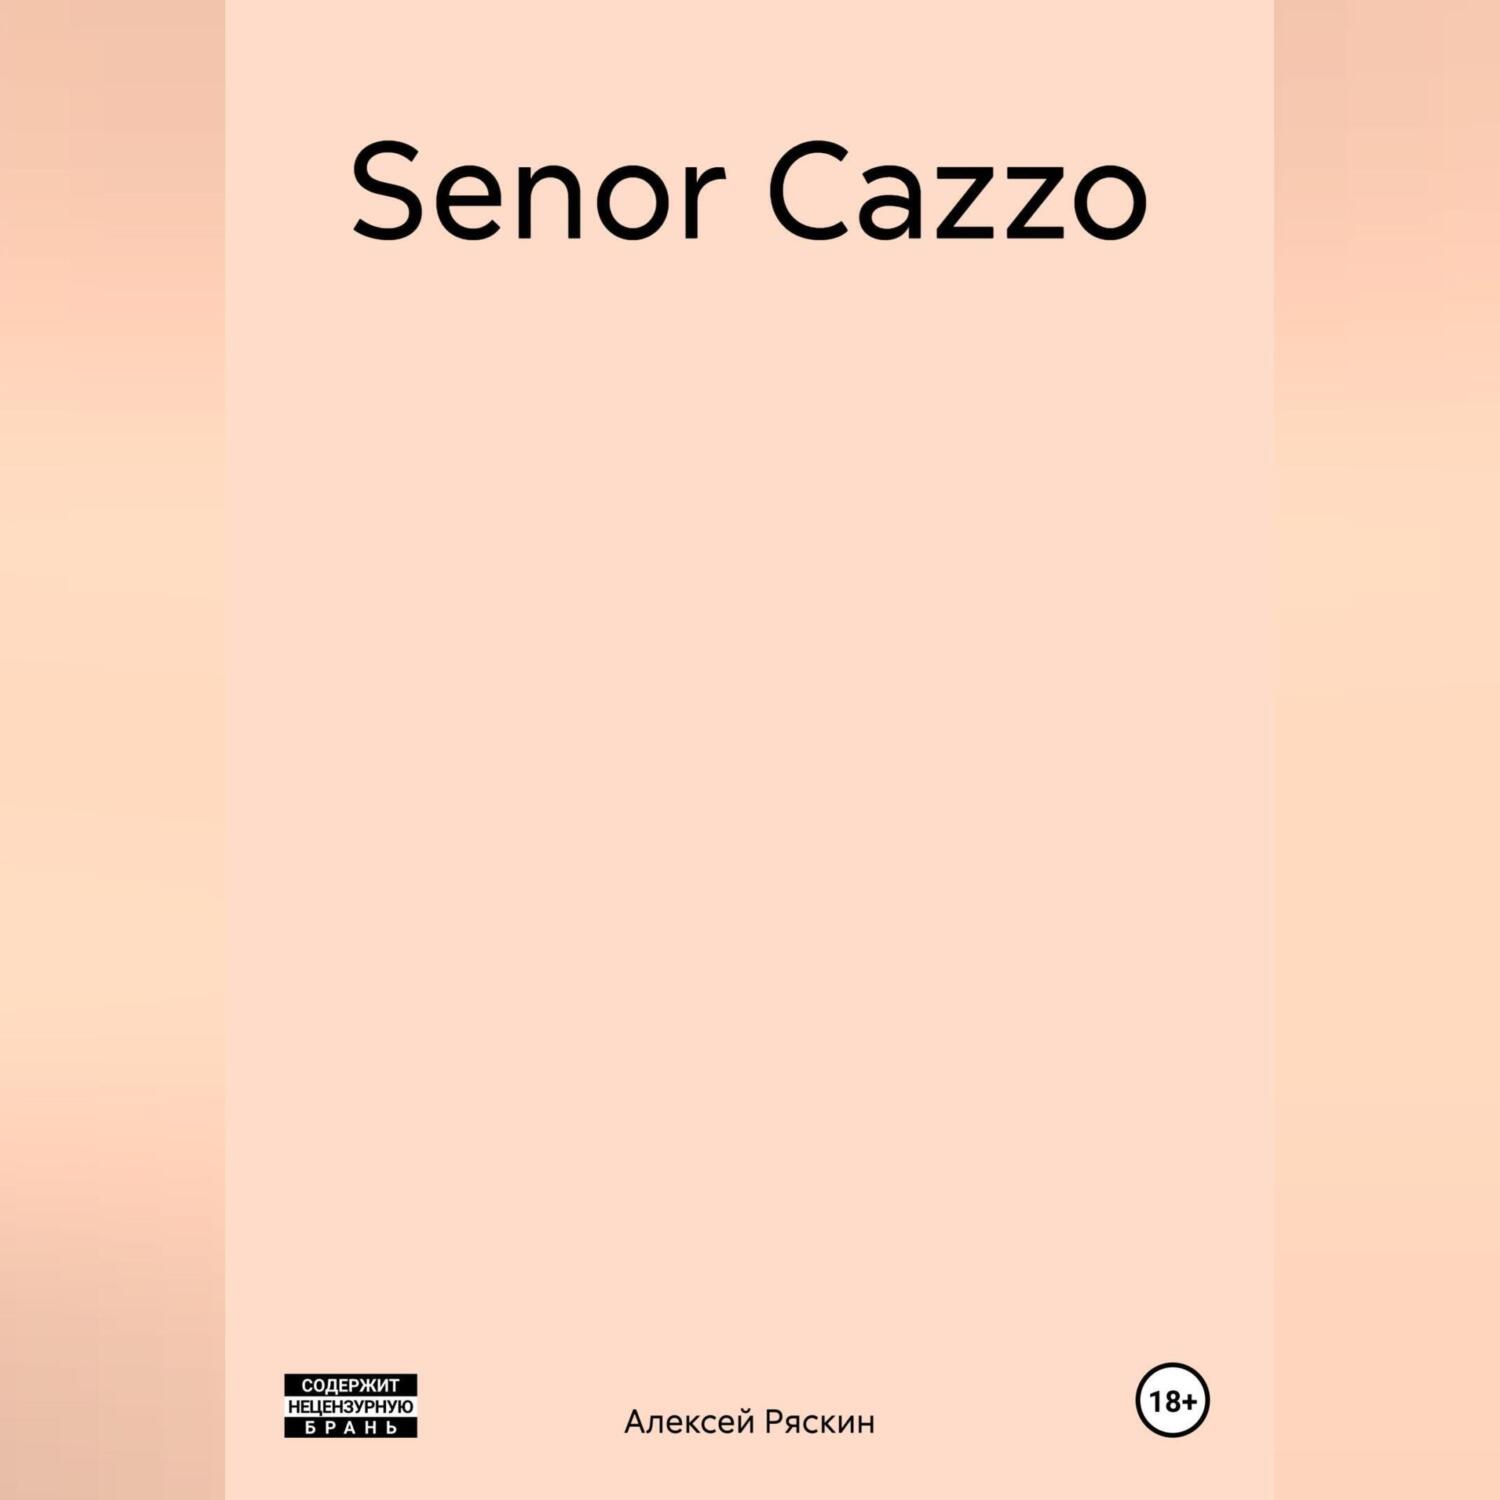 Senor Cazzo